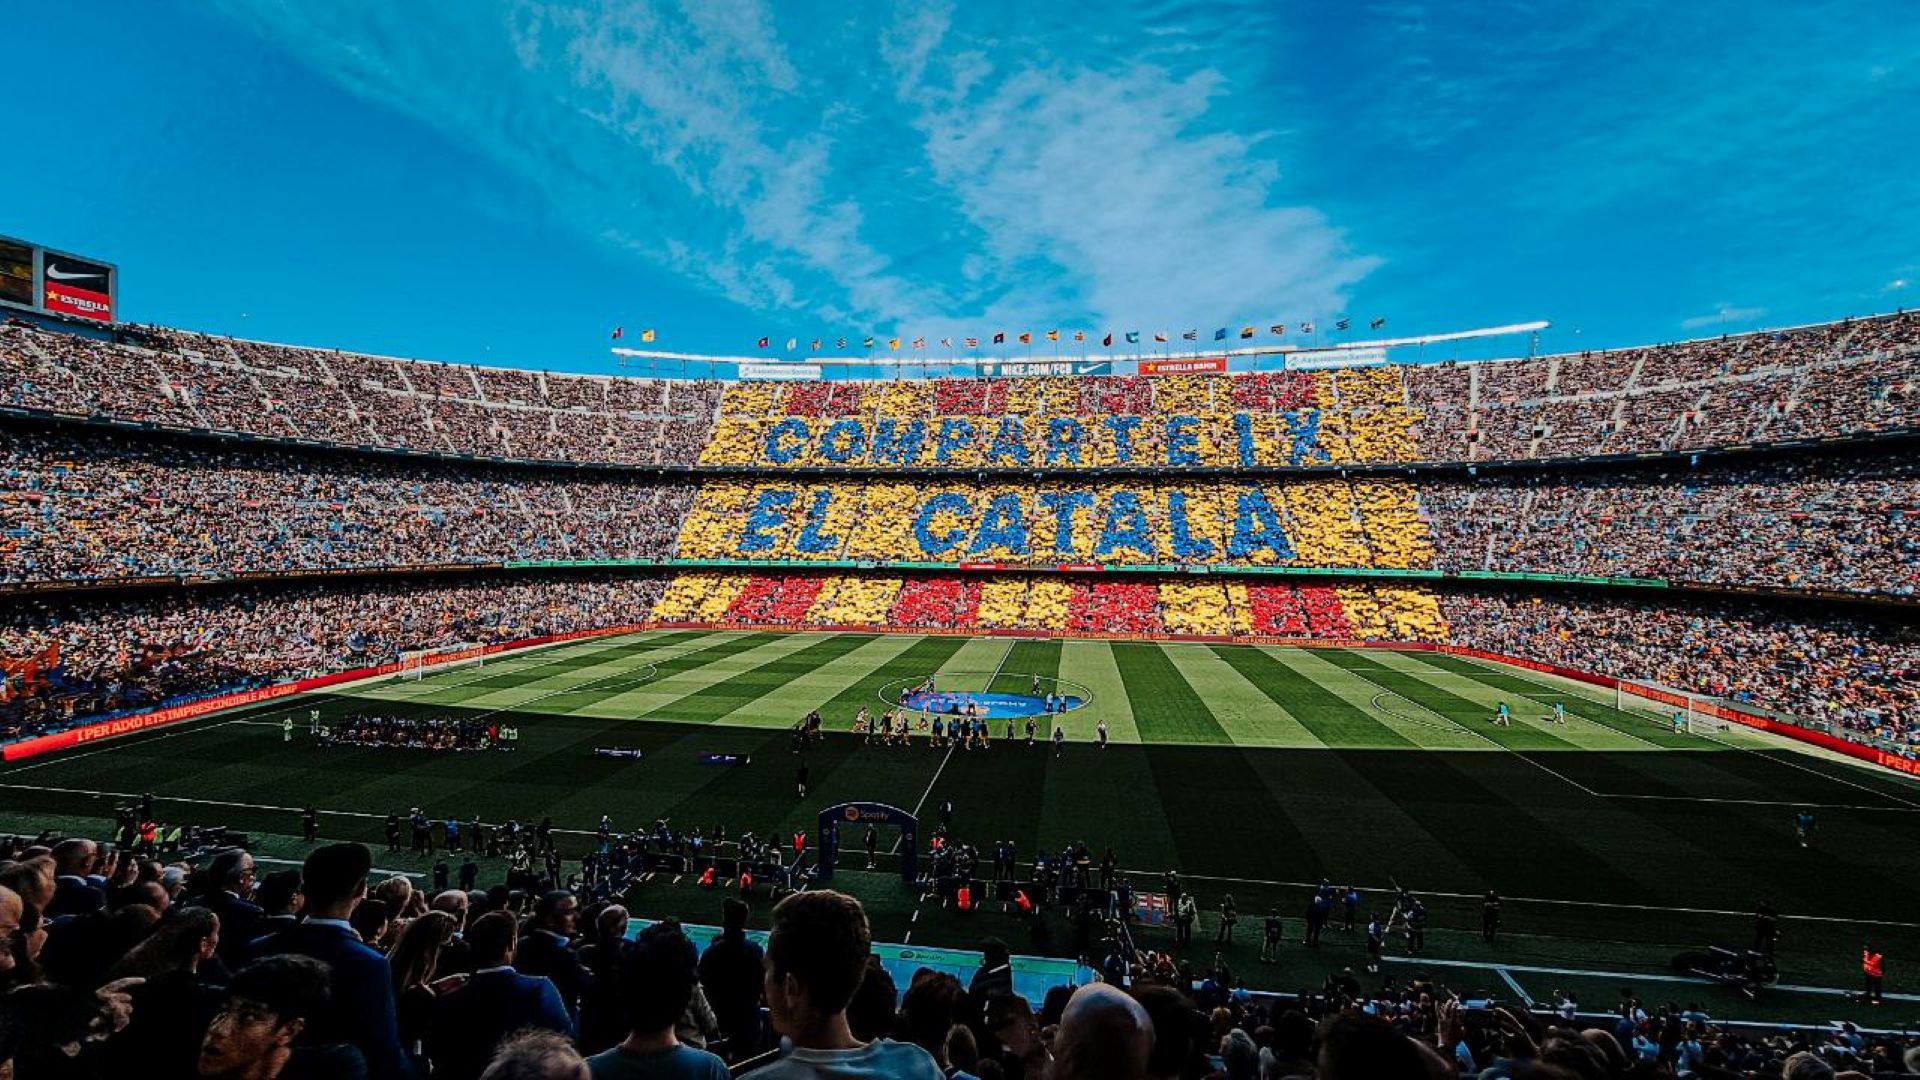 La gran acción por el catalán de Òmnium y el Barça en el Camp Nou